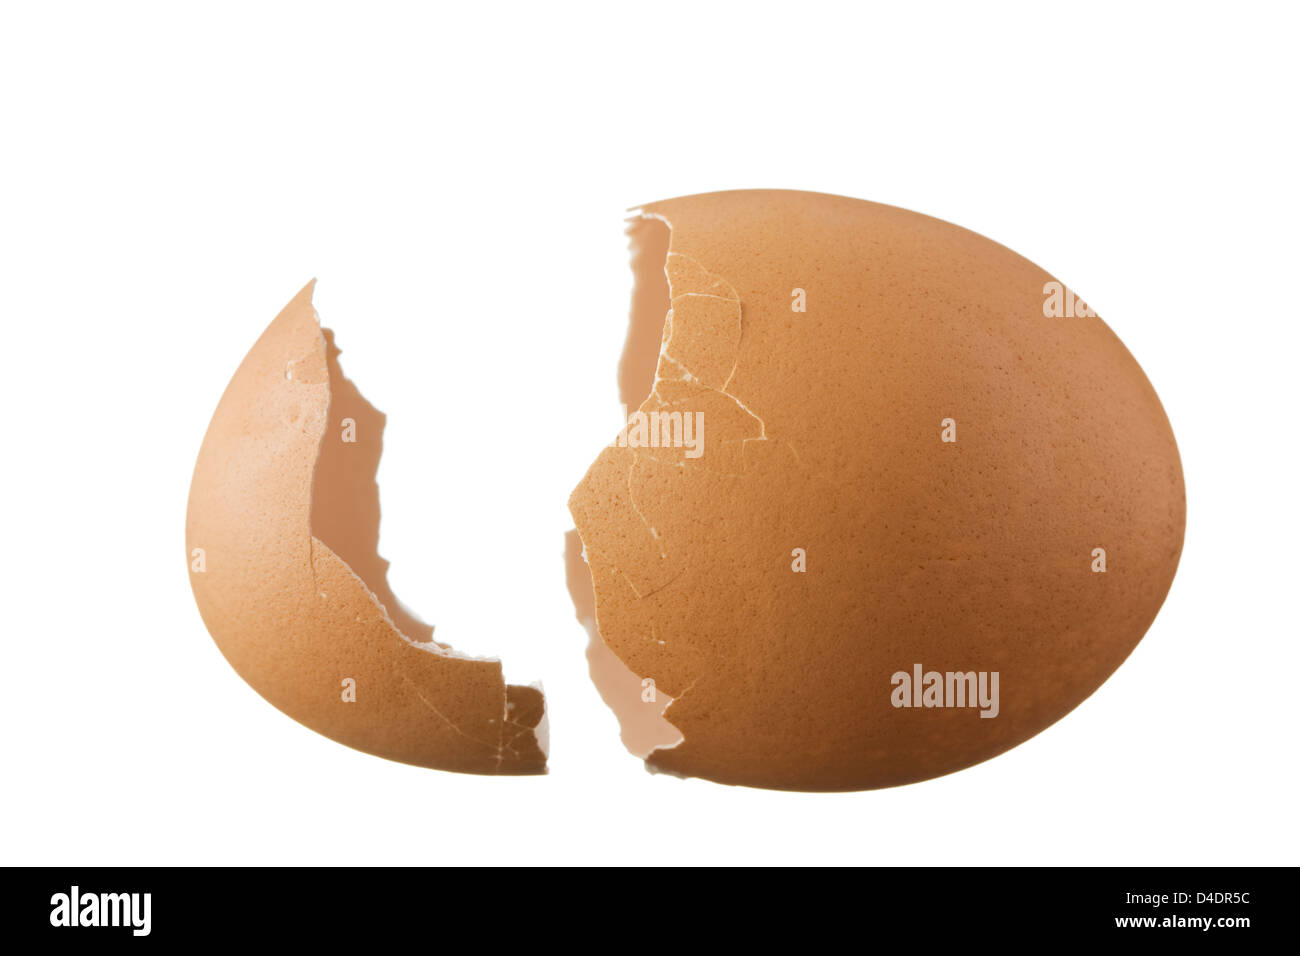 Guscio d'uovo isolato su sfondo bianco Foto Stock